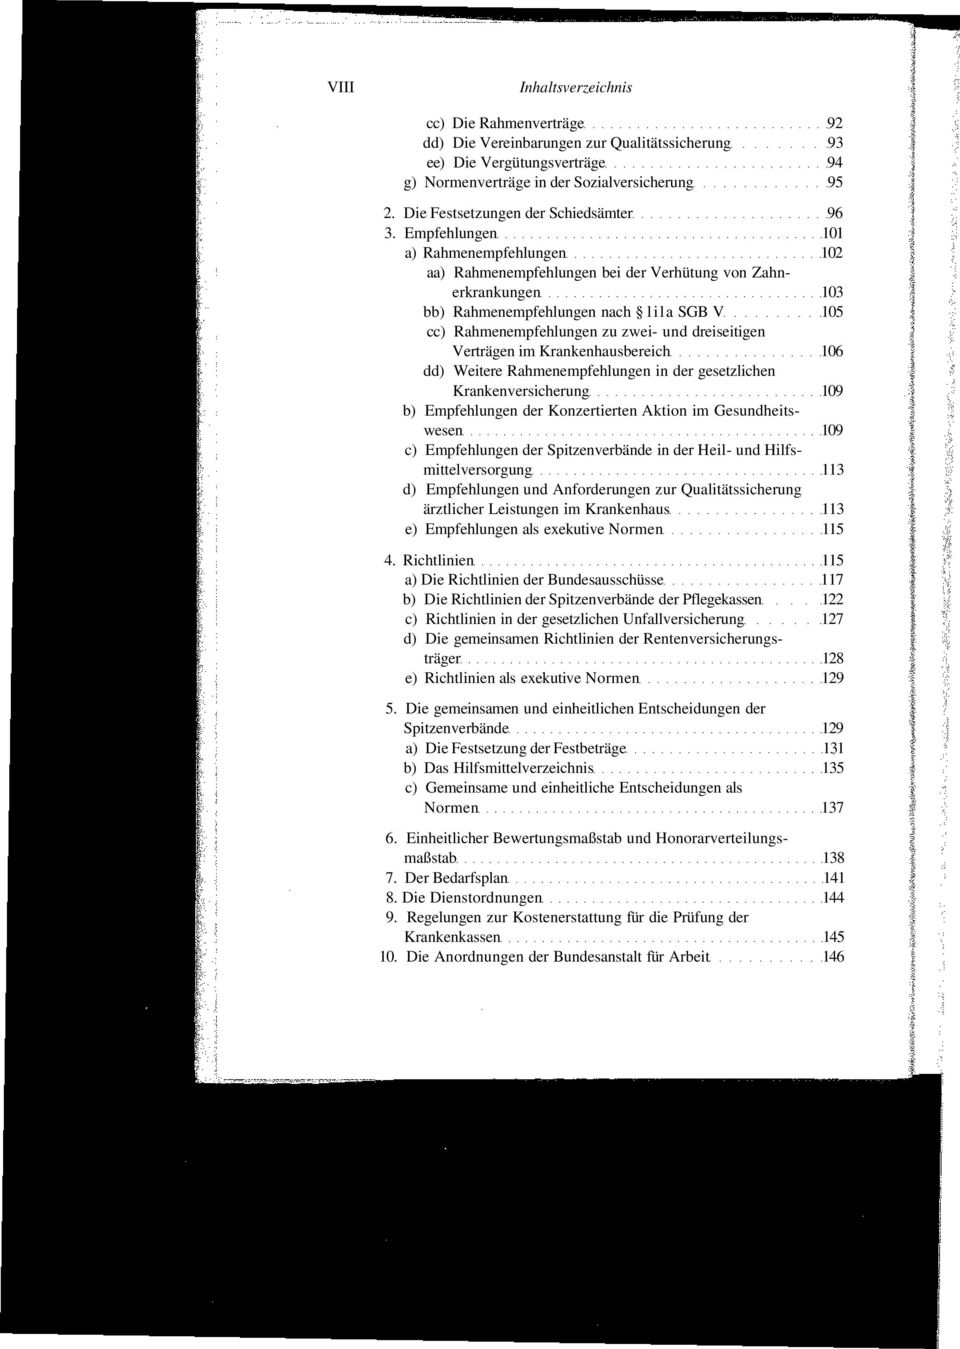 Empfehlungen 101 a) Rahmenempfehlungen 102 aa) Rahmenempfehlungen bei der Verhütung von Zahnerkrankungen 103 bb) Rahmenempfehlungen nach lila SGB V 105 cc) Rahmenempfehlungen zu zwei- und